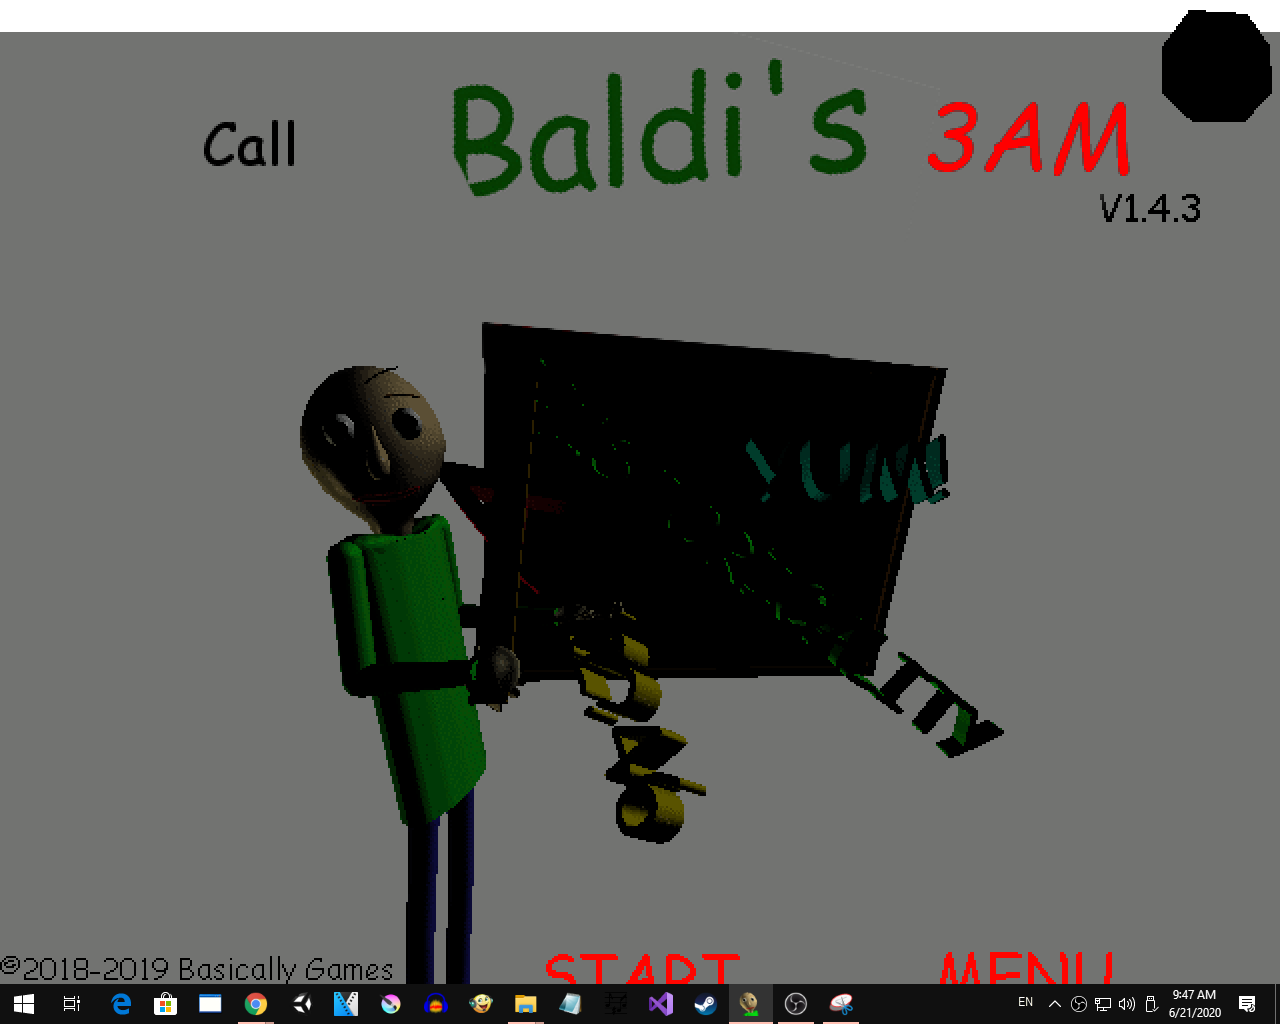 Call Baldi 3AM